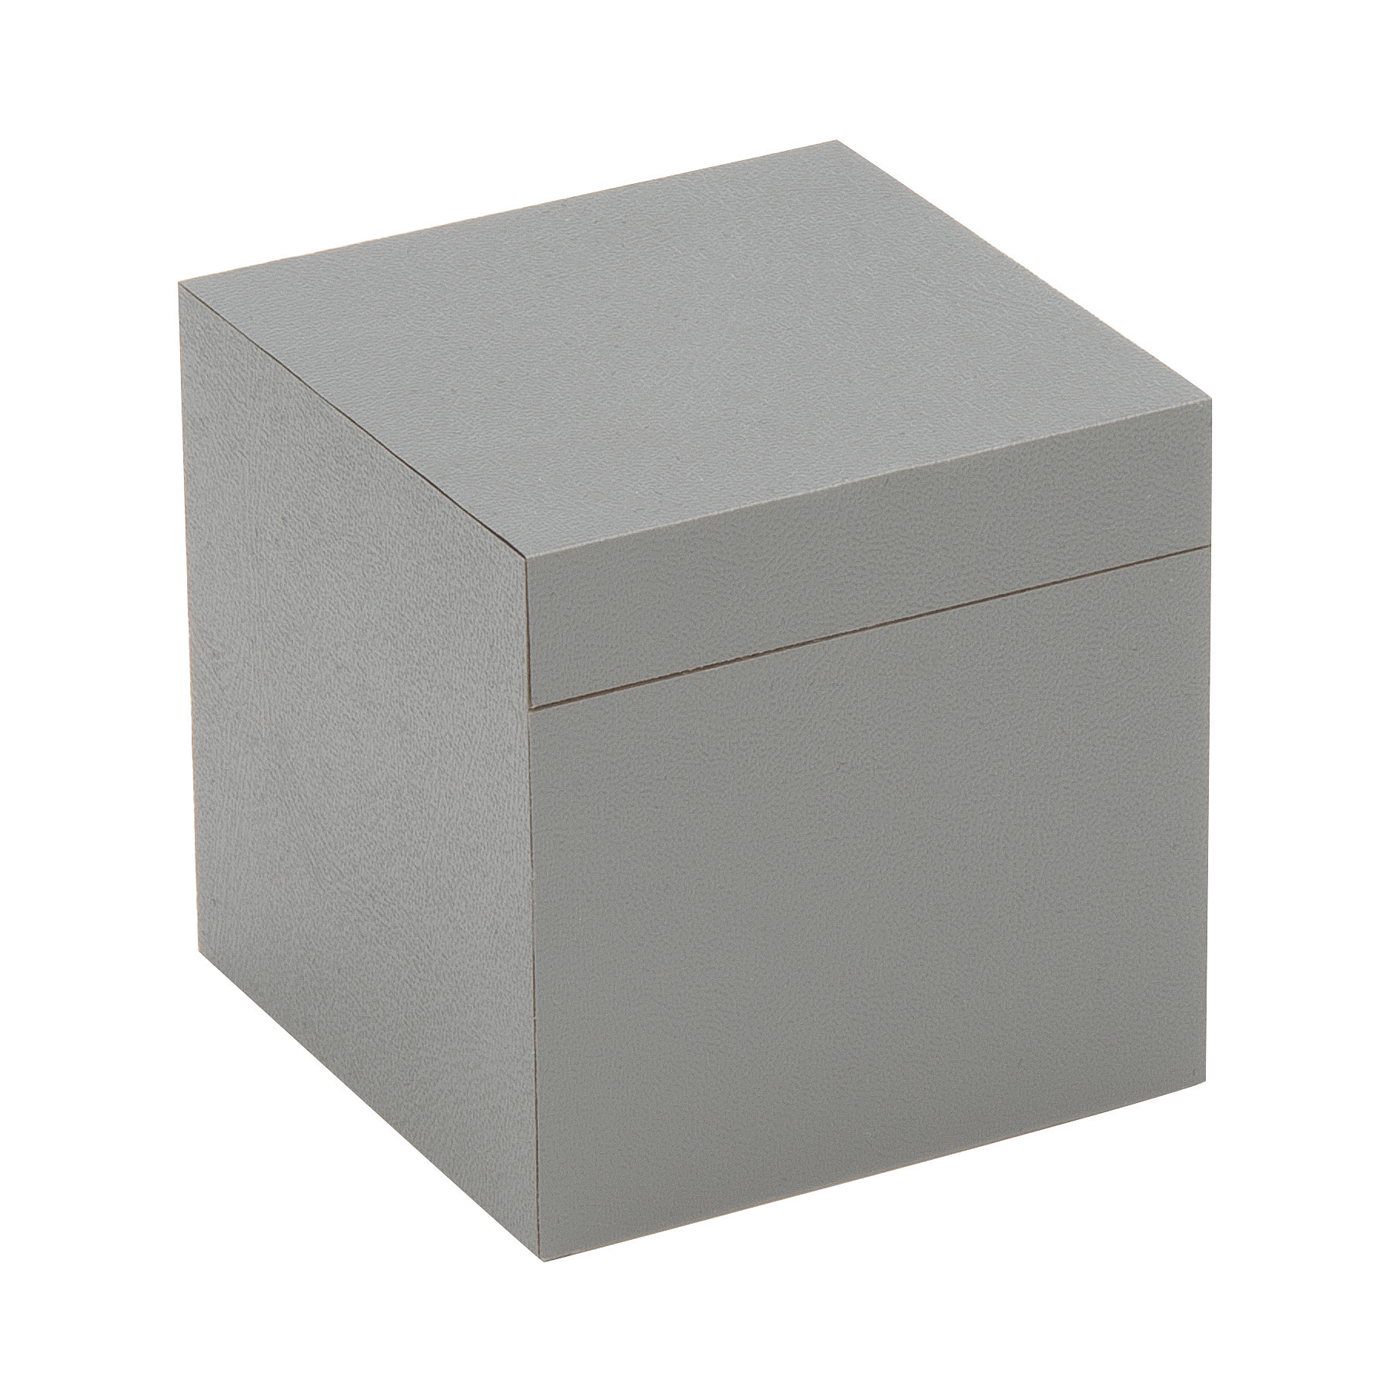 PICA-Design Schmucketui "Greybox", 50 x 50 x 50 mm - 1 Stück